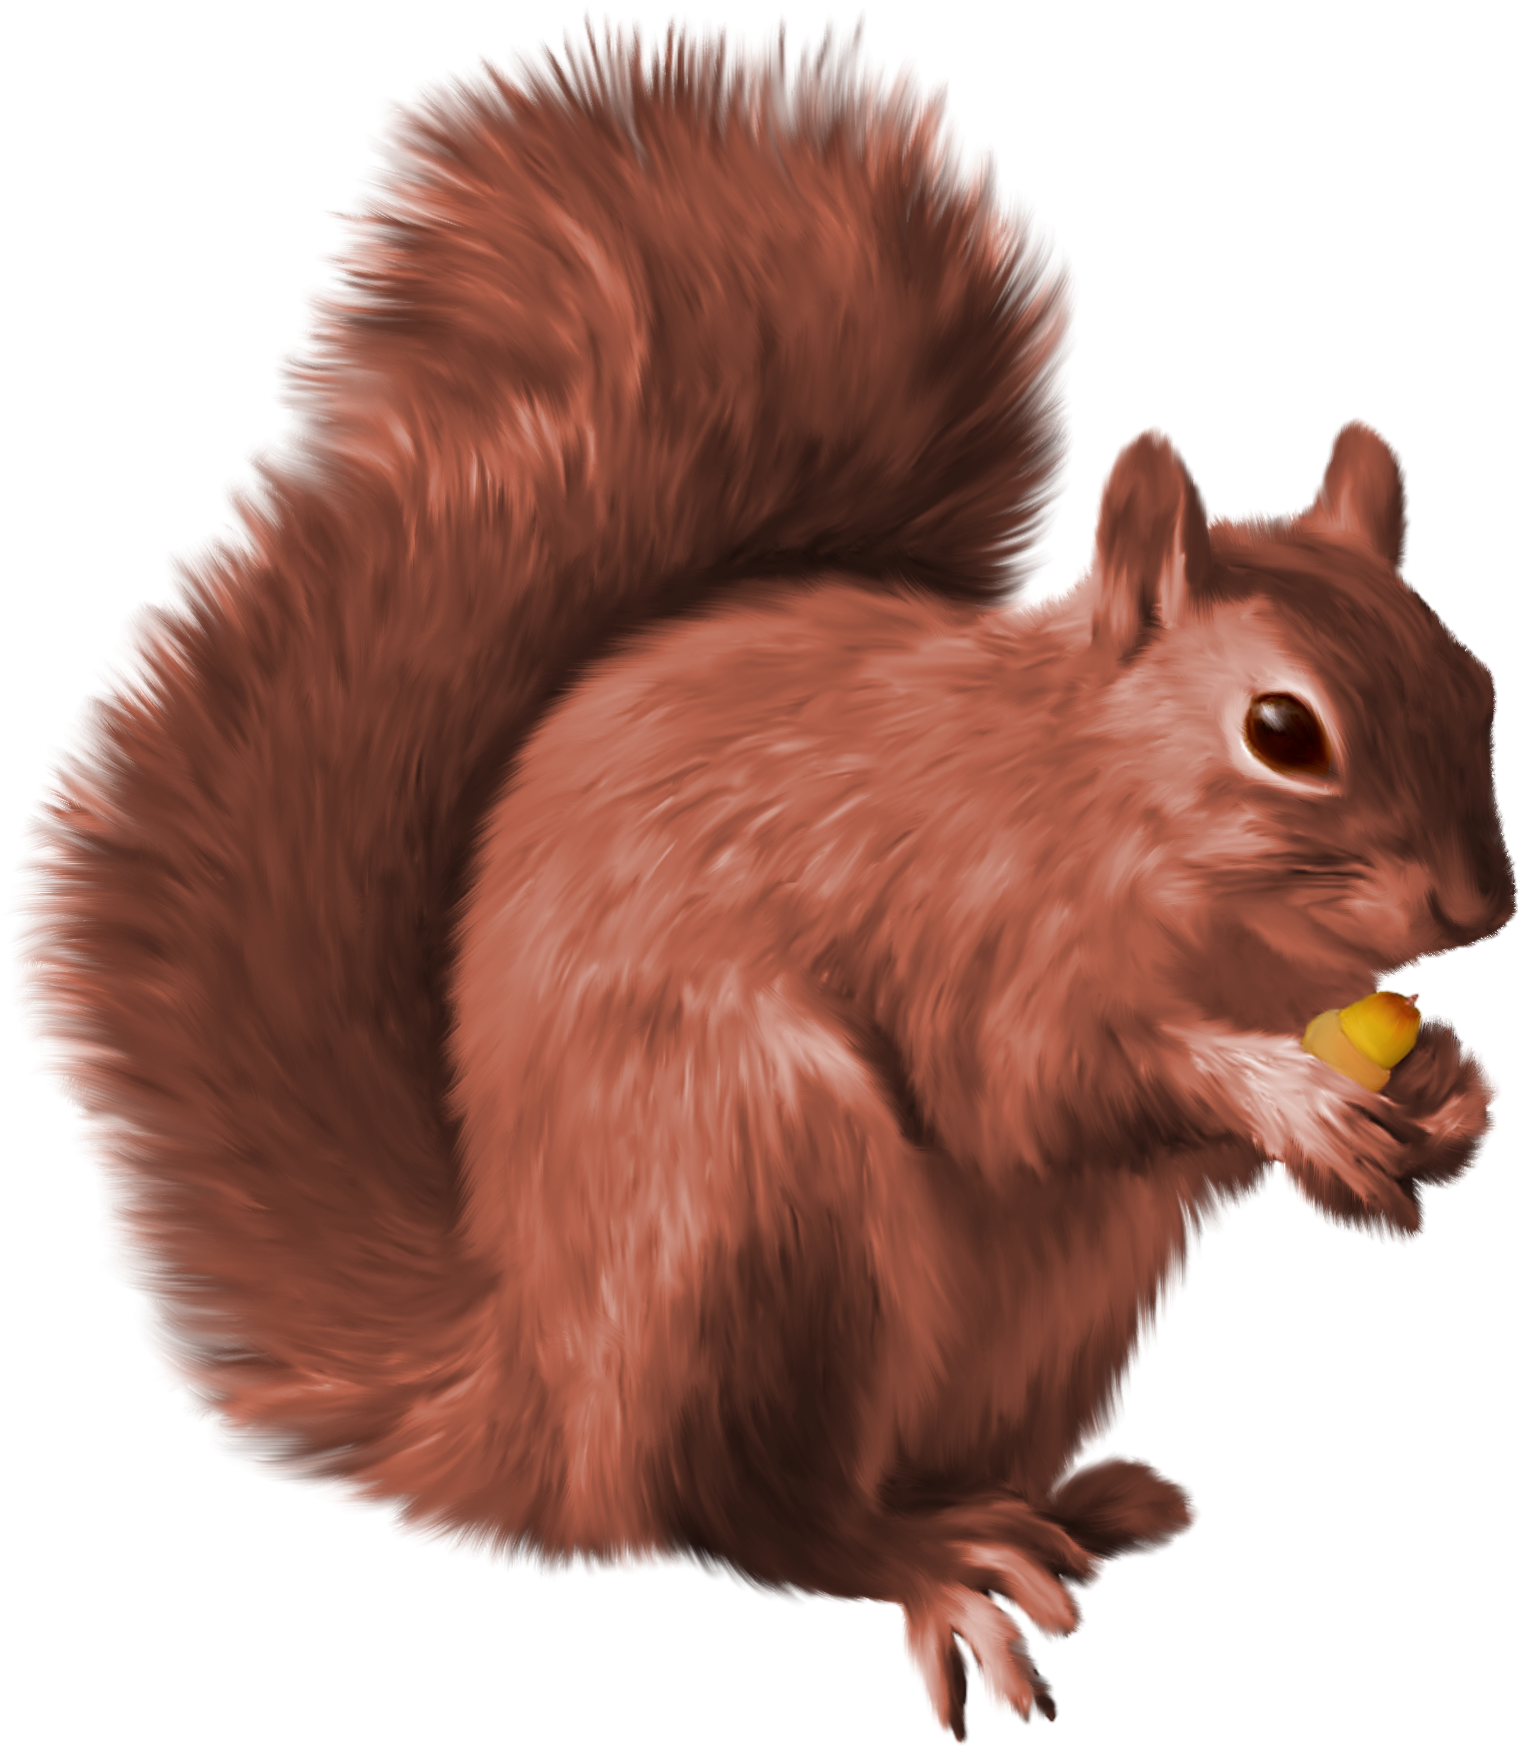 Squirrel-21-1